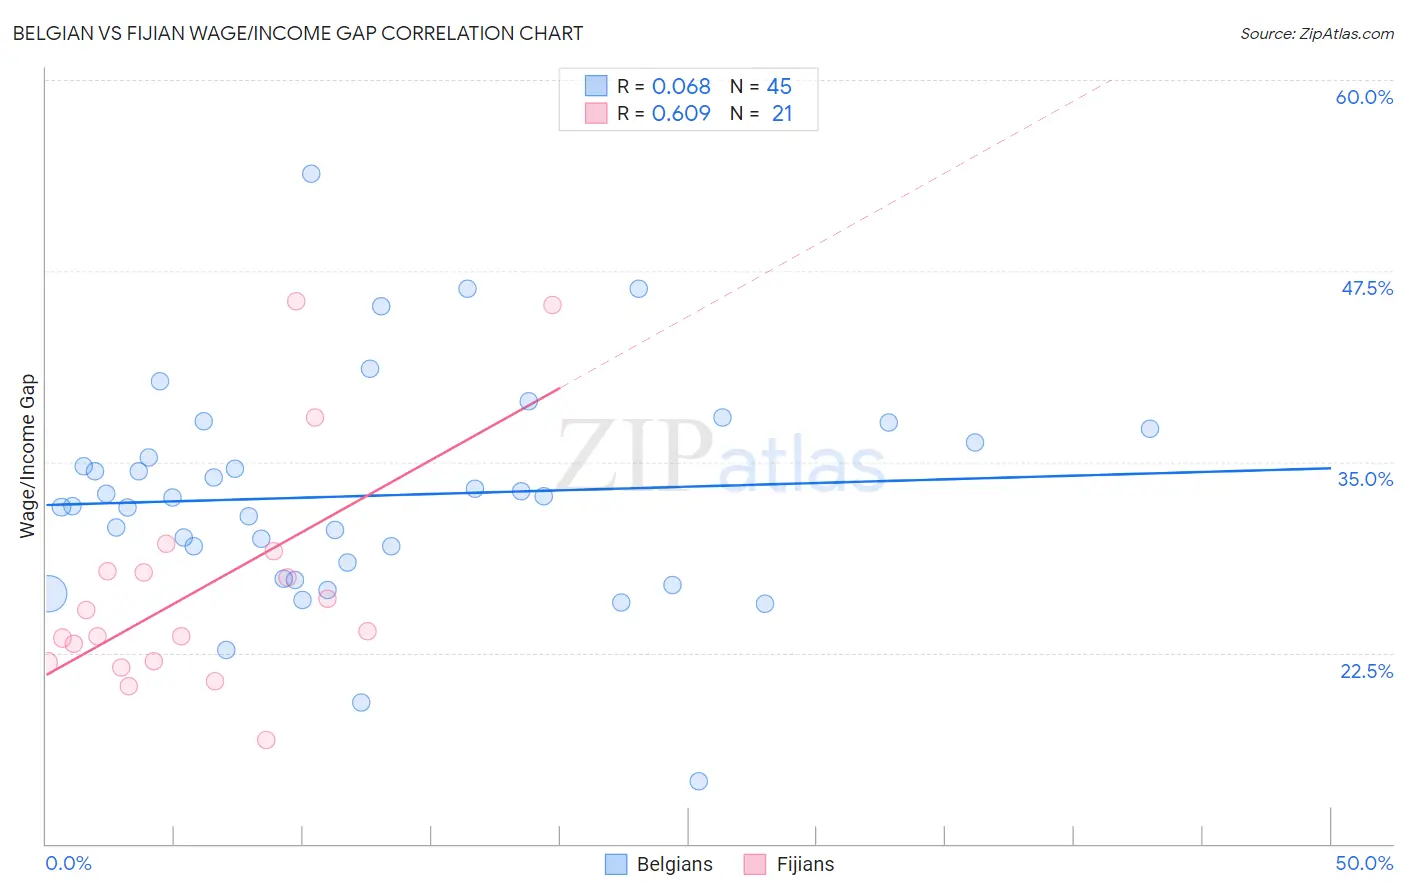 Belgian vs Fijian Wage/Income Gap